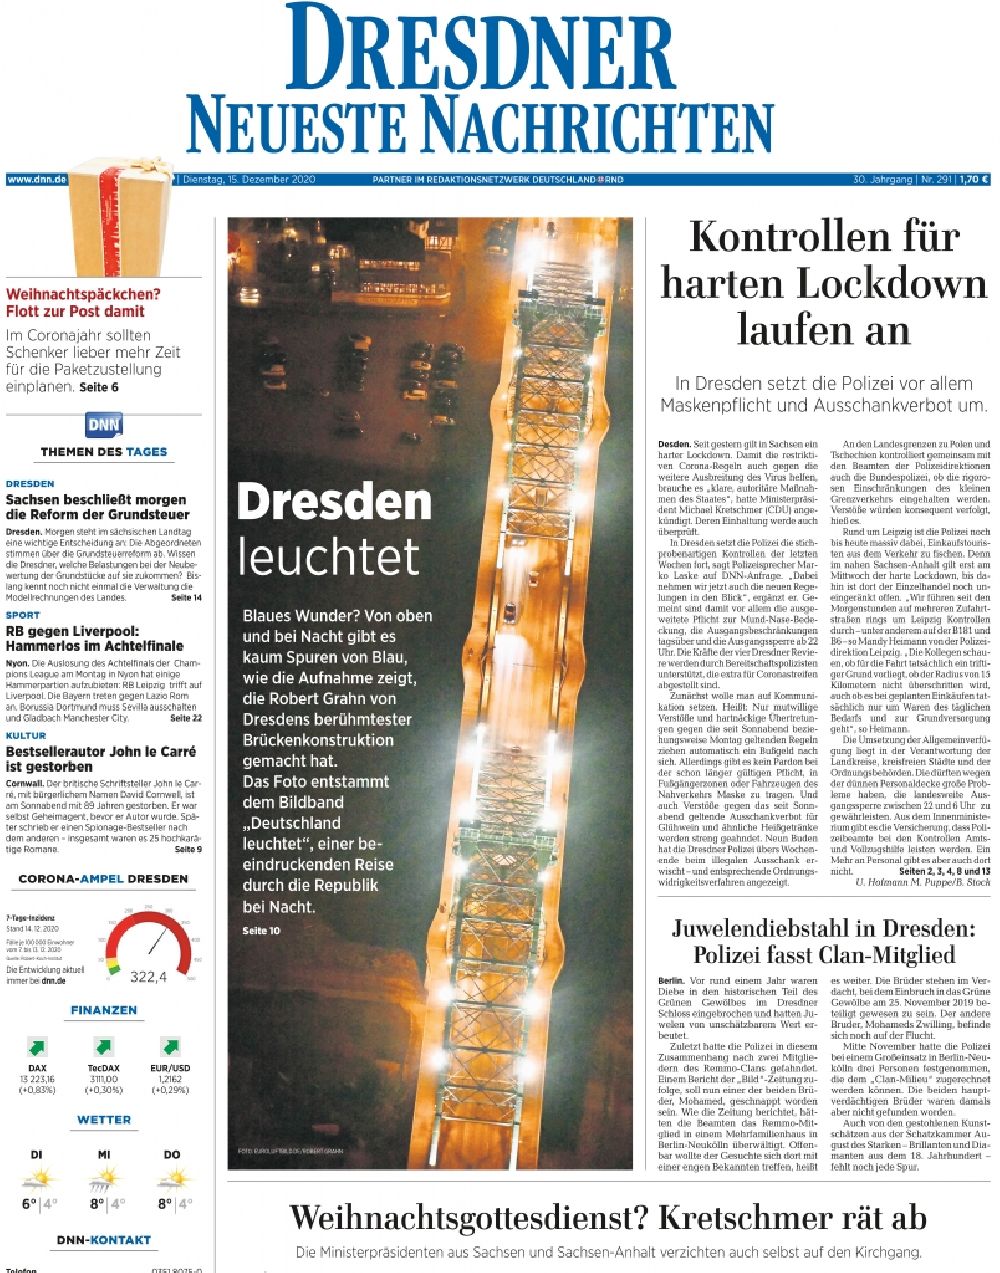 Luftbild Dresden - Belegausschnitt / Medienverwendung der Luftbildverwendung in DNN Dresdner Neueste Nachrichten Titelseite 1 in Dresden im Bundesland Sachsen, Deutschland